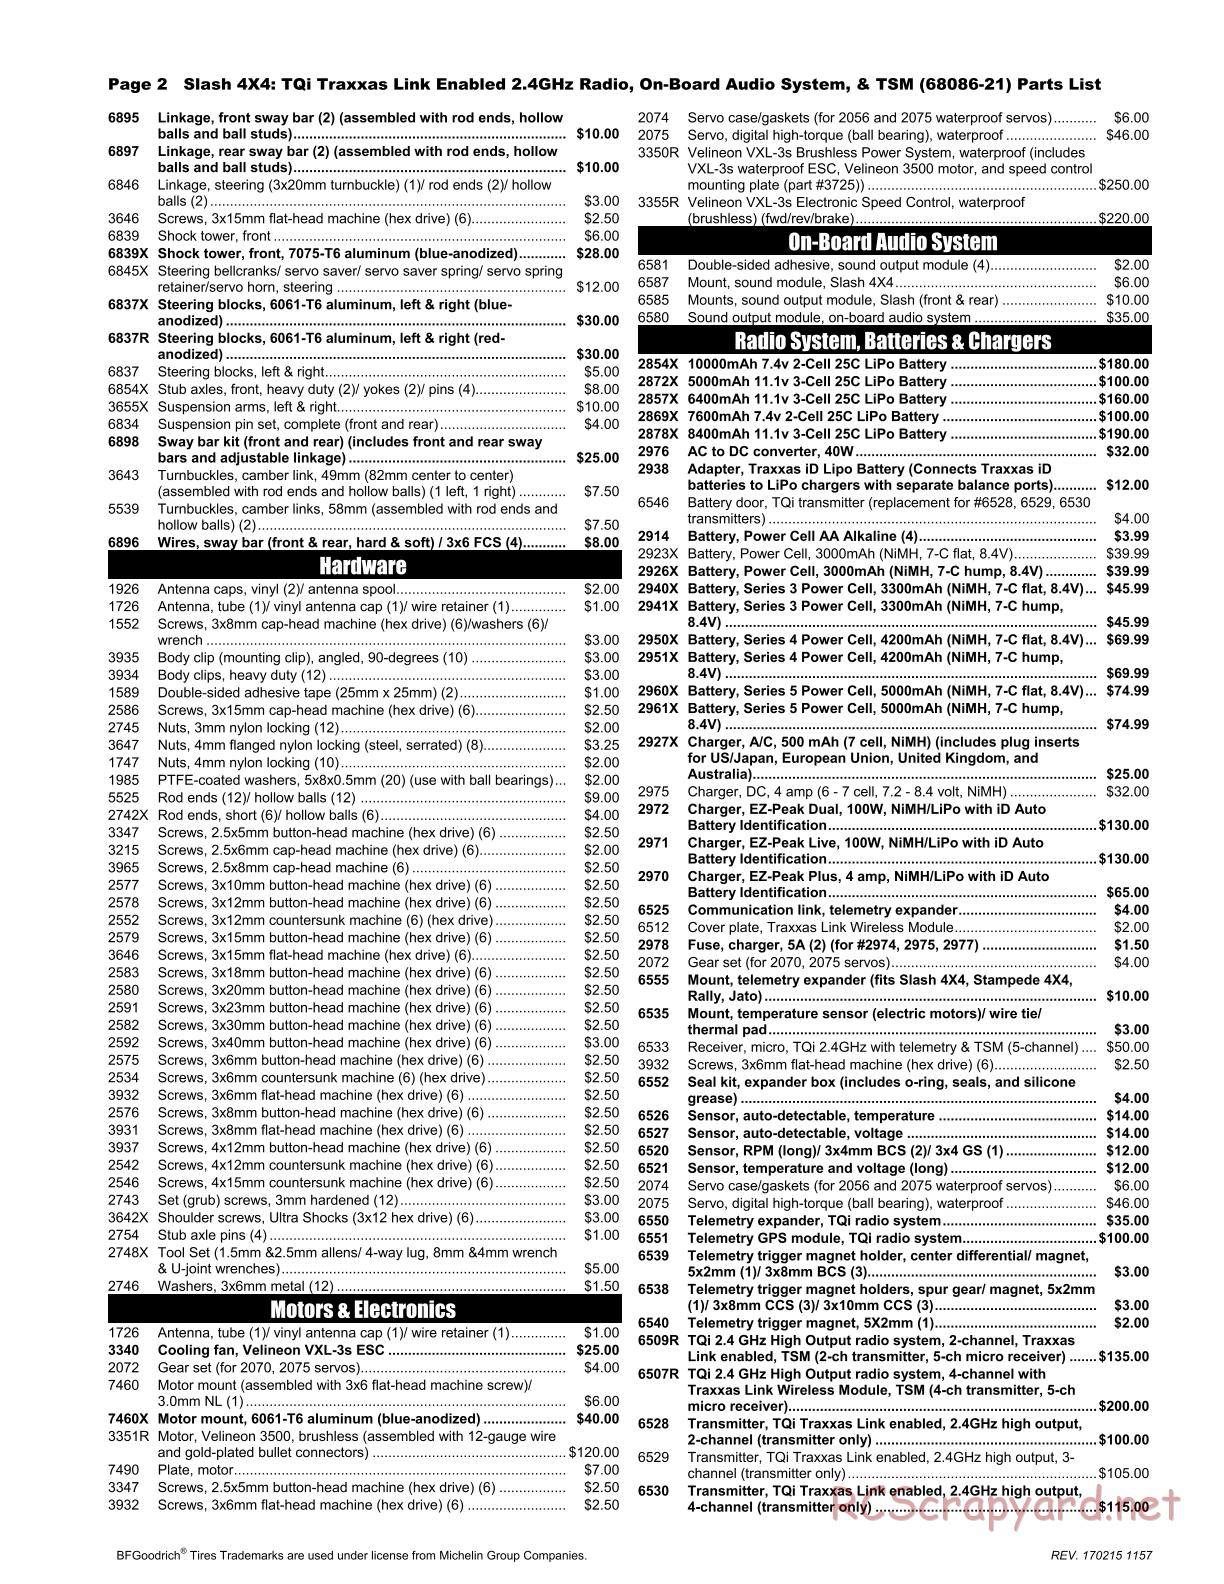 Traxxas - Slash 4x4 TSM OBA - Parts List - Page 2